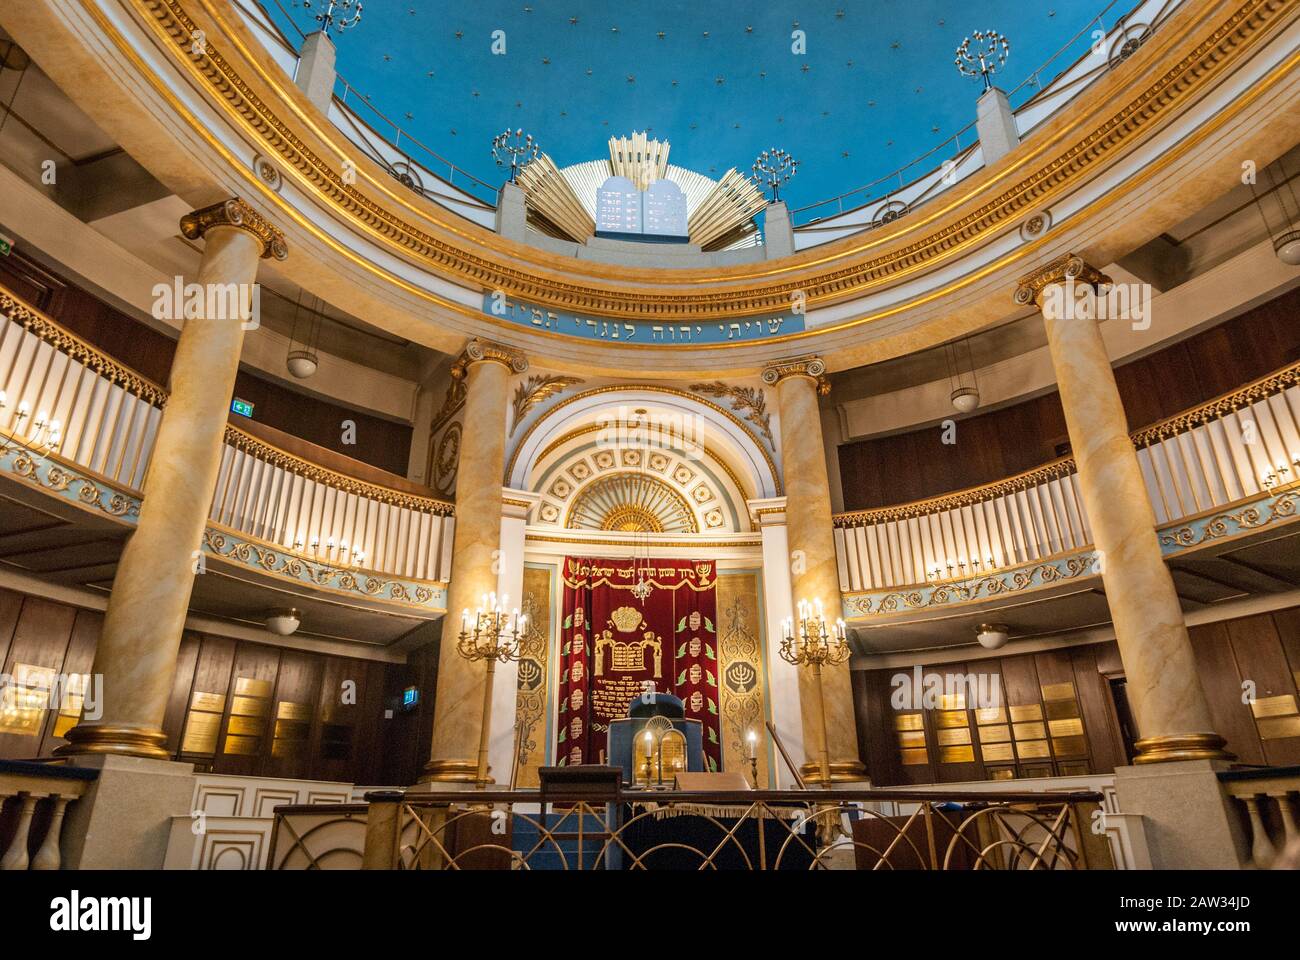 Vienne, Autriche, 21 août 2019 - la porte principale de la synagogue centrale de Vienne (Stadttempel Wien) à Seitenstettengasse Banque D'Images